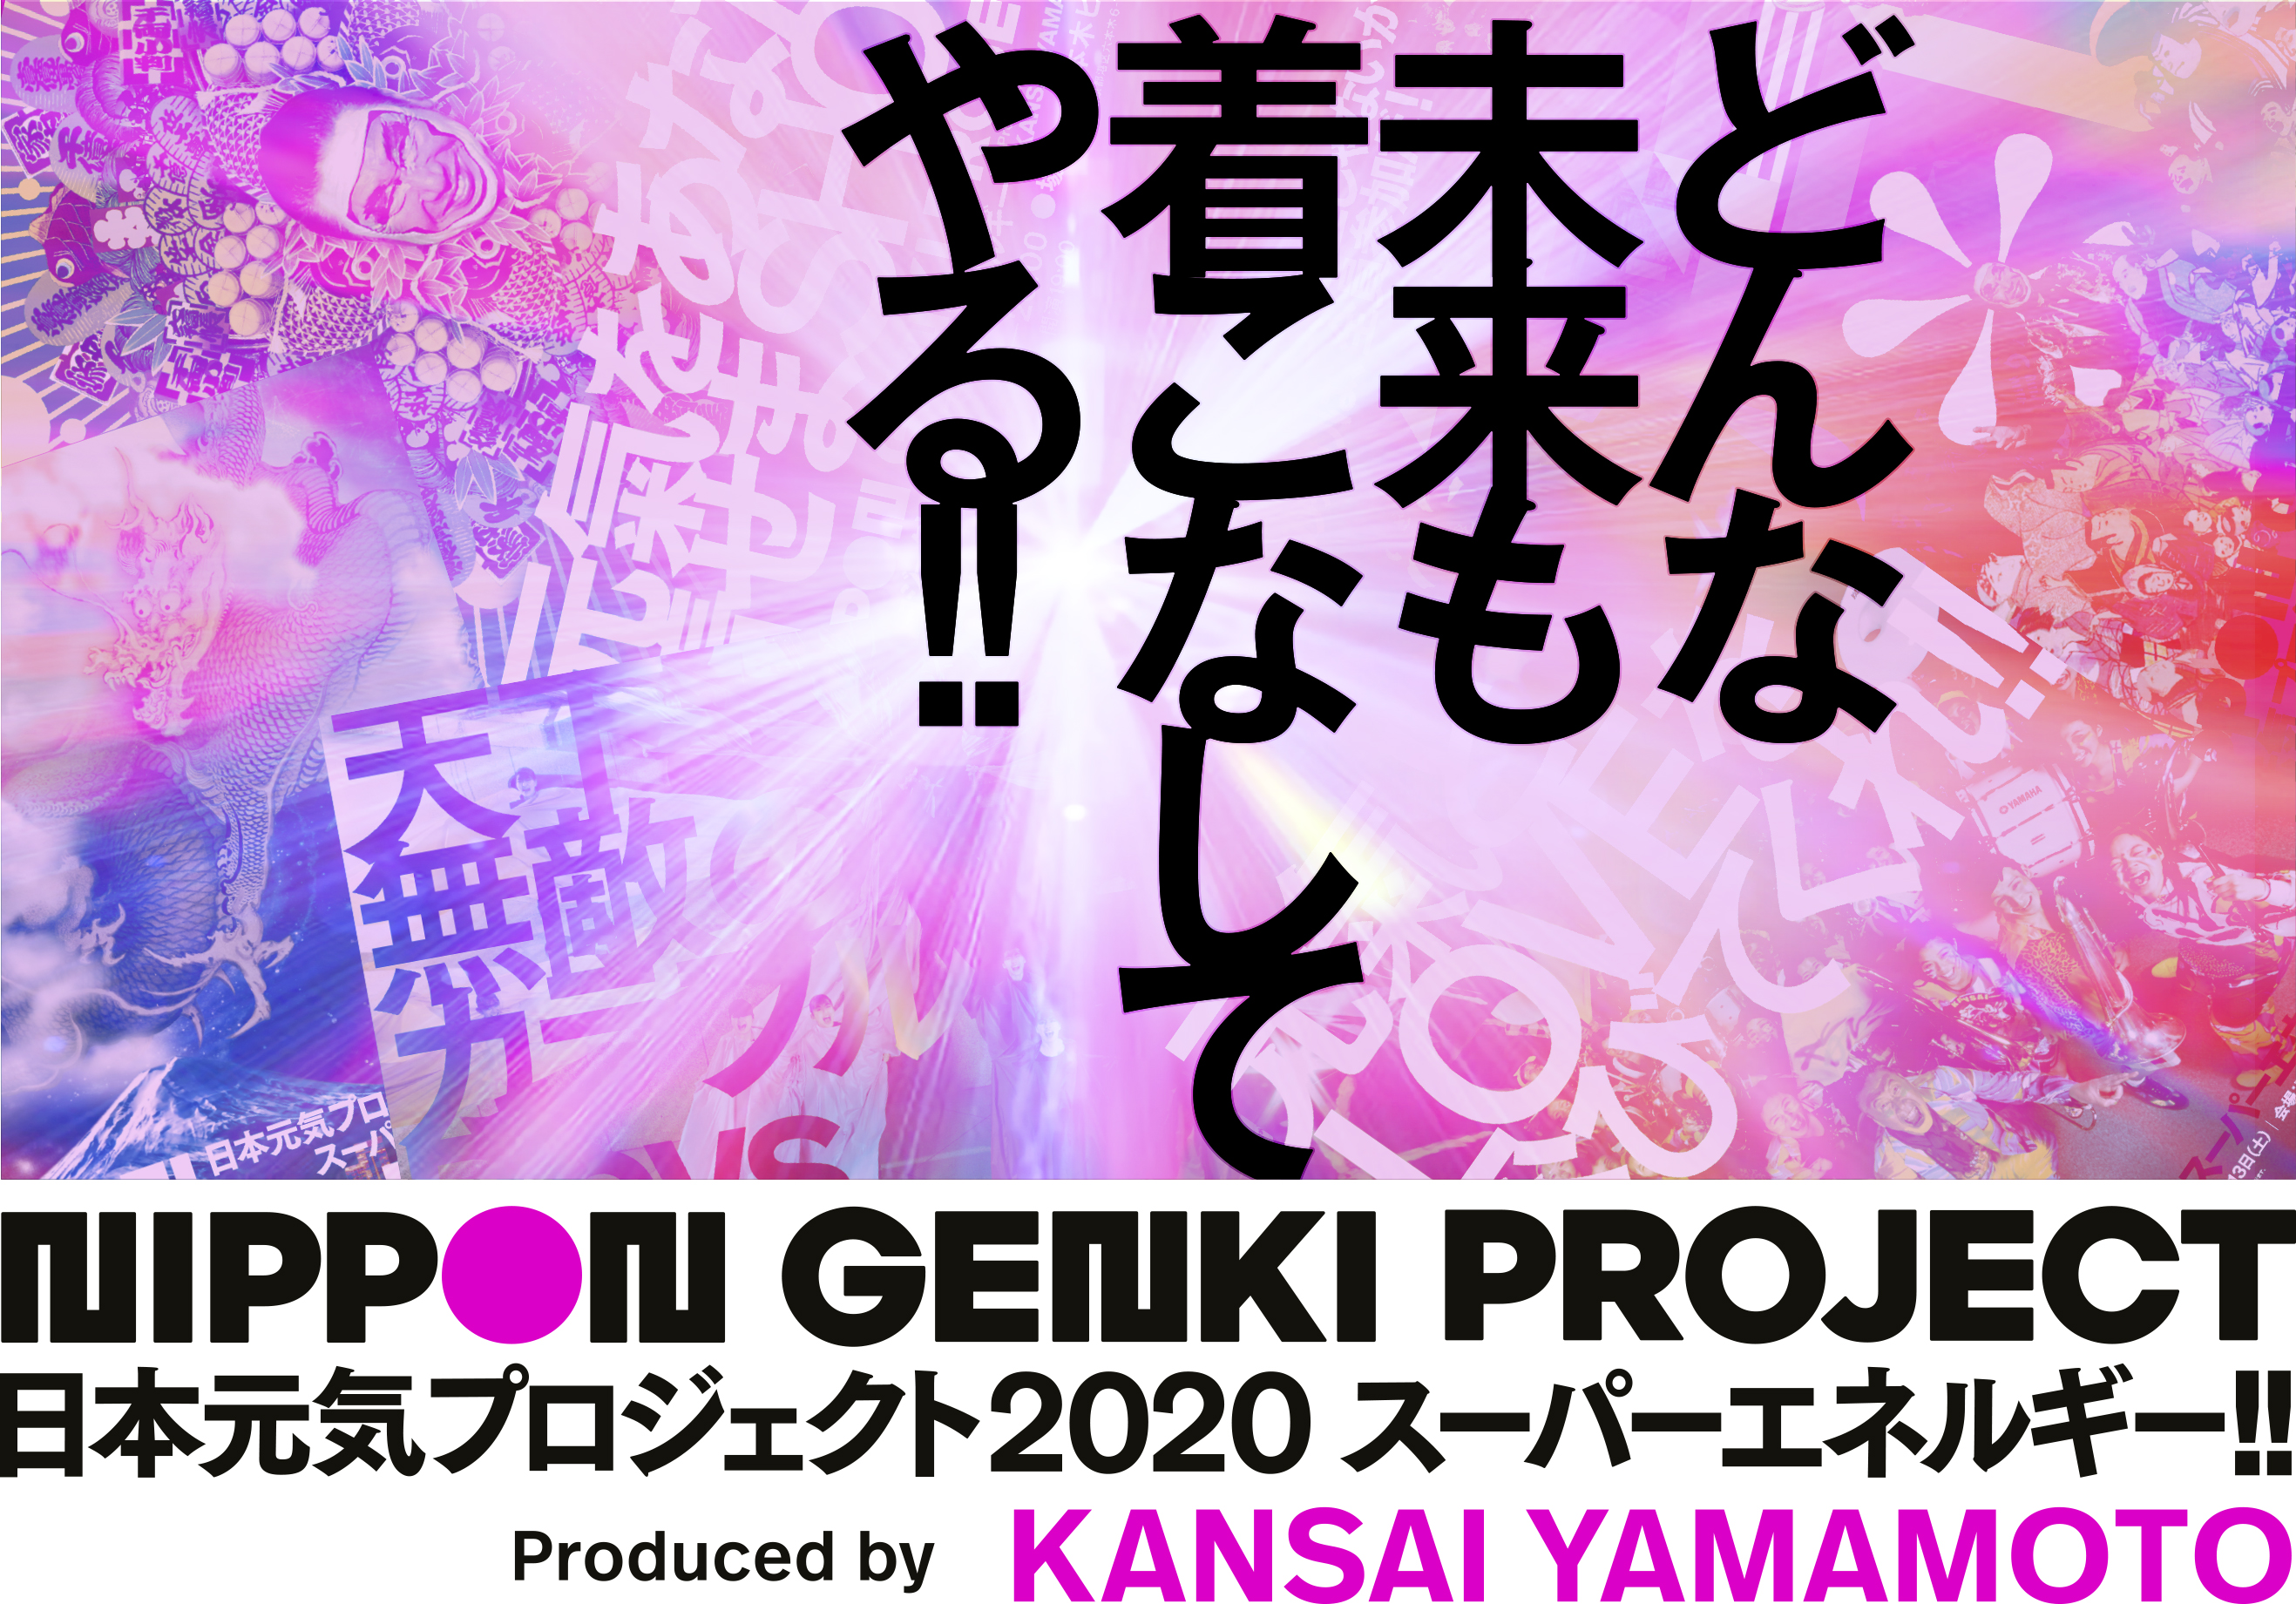 日本元気プロジェクト2020「スーパーエネルギー!!」Produced by KANSAI YAMAMOTO 今年は「光」をテーマに世界遺産 比叡山延暦寺より一部生中継！ 夏木マリ、歌舞伎役者 市川右團次が放つファッションの「光」とは？